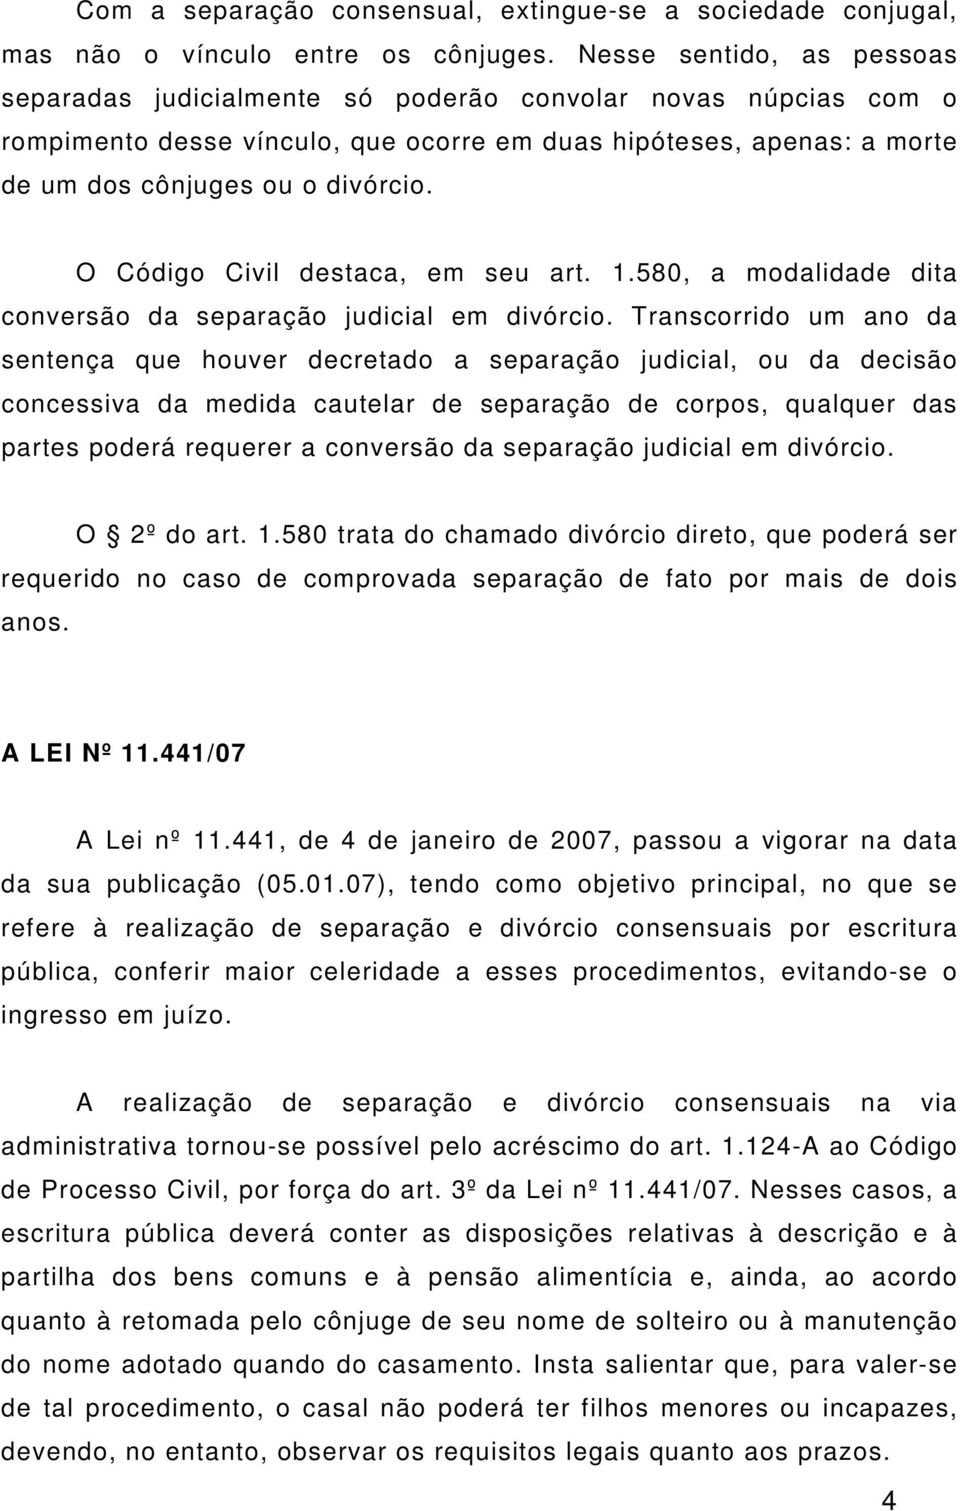 O Código Civil destaca, em seu art. 1.580, a modalidade dita conversão da separação judicial em divórcio.